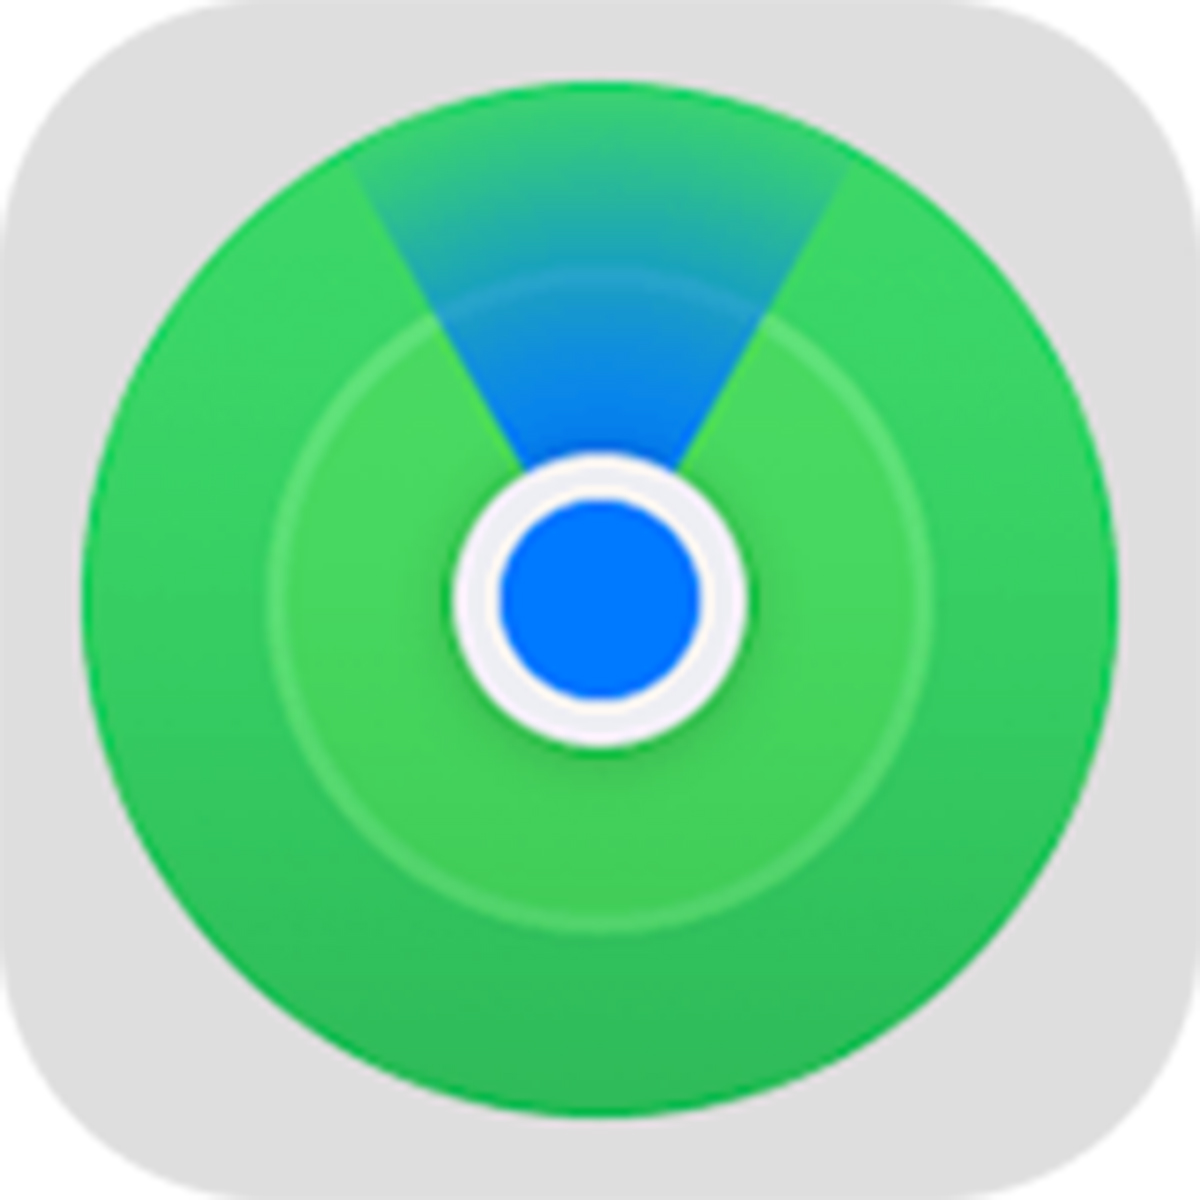 Icono de la app Buscar de Apple.